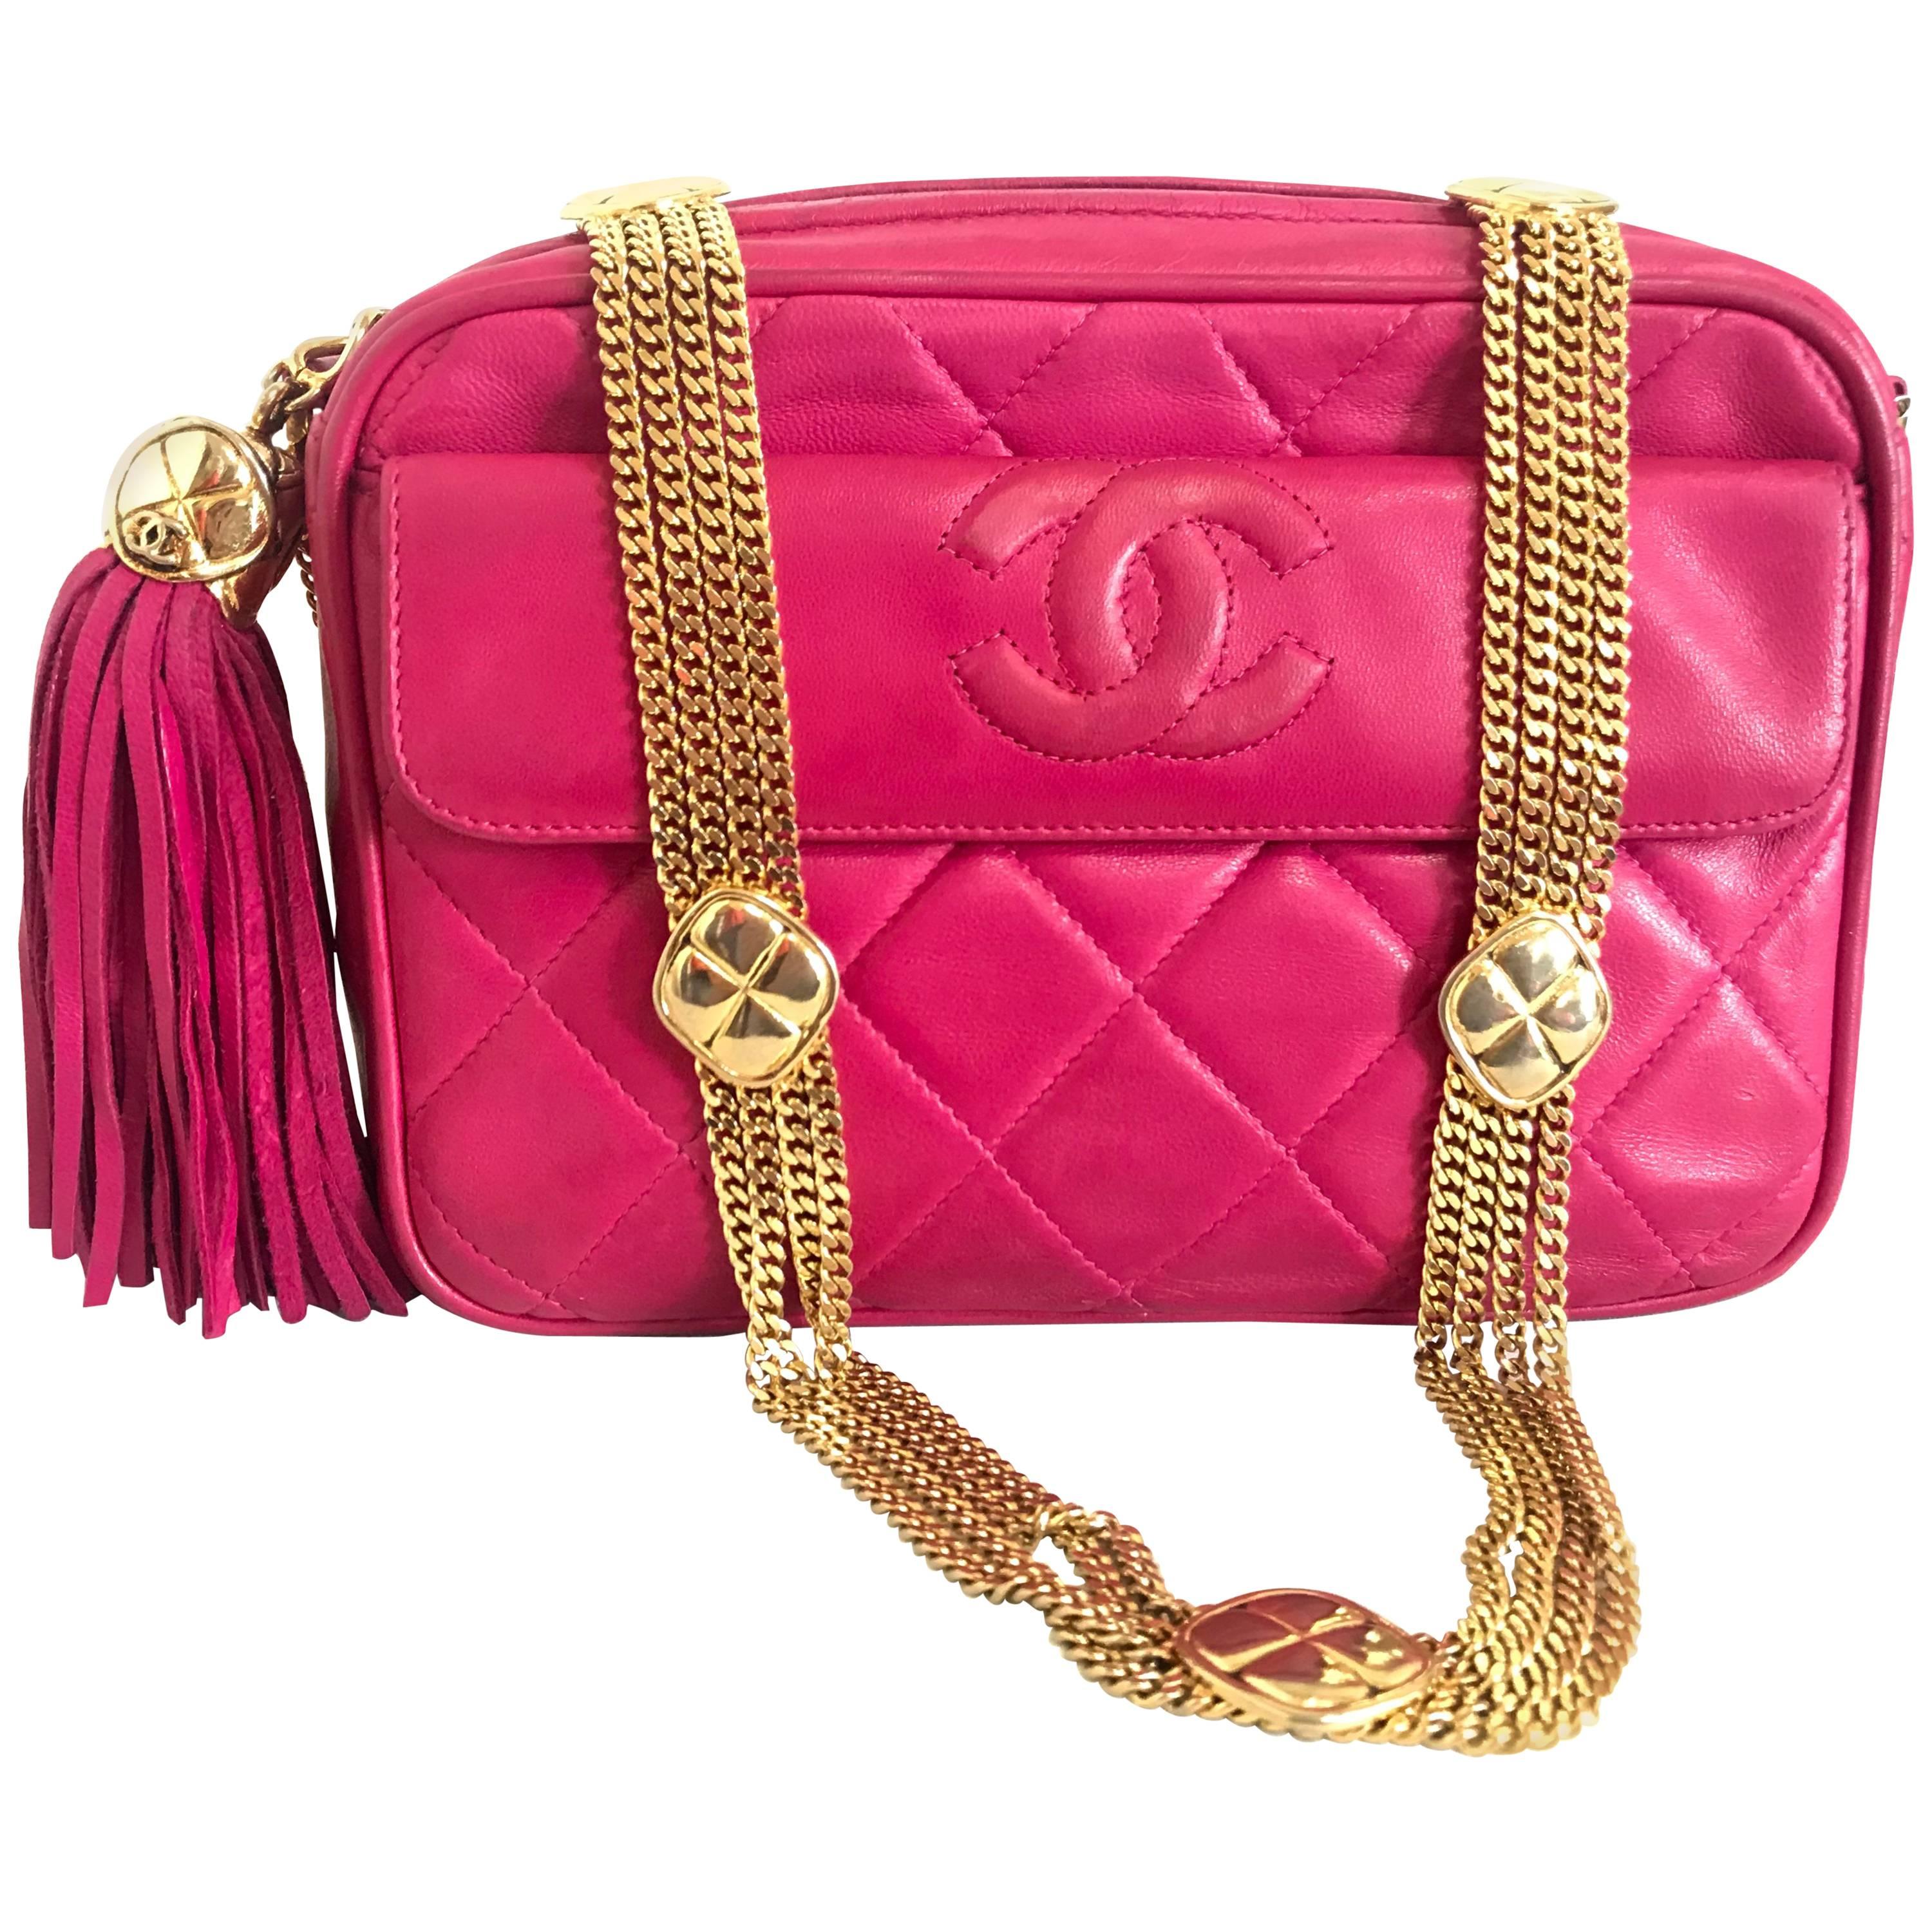 Chanel CC pink leather camera bag style Vintage shoulder bag with tassel  For Sale